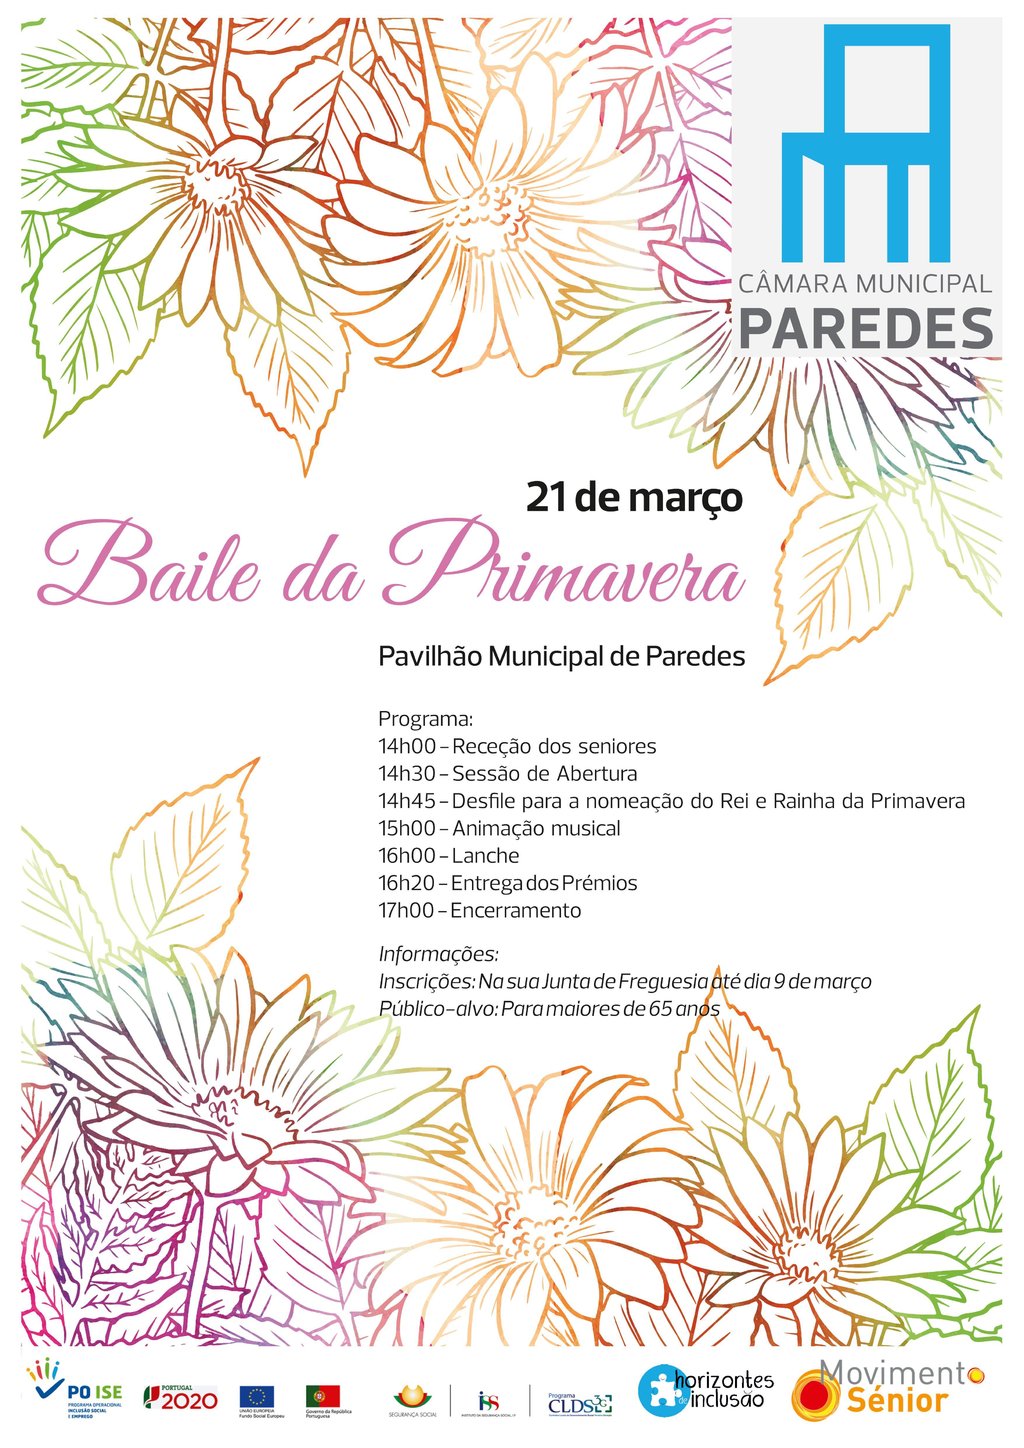 Pavilhão Municipal de Paredes recebe Baile da Primavera destinado à população sénior 